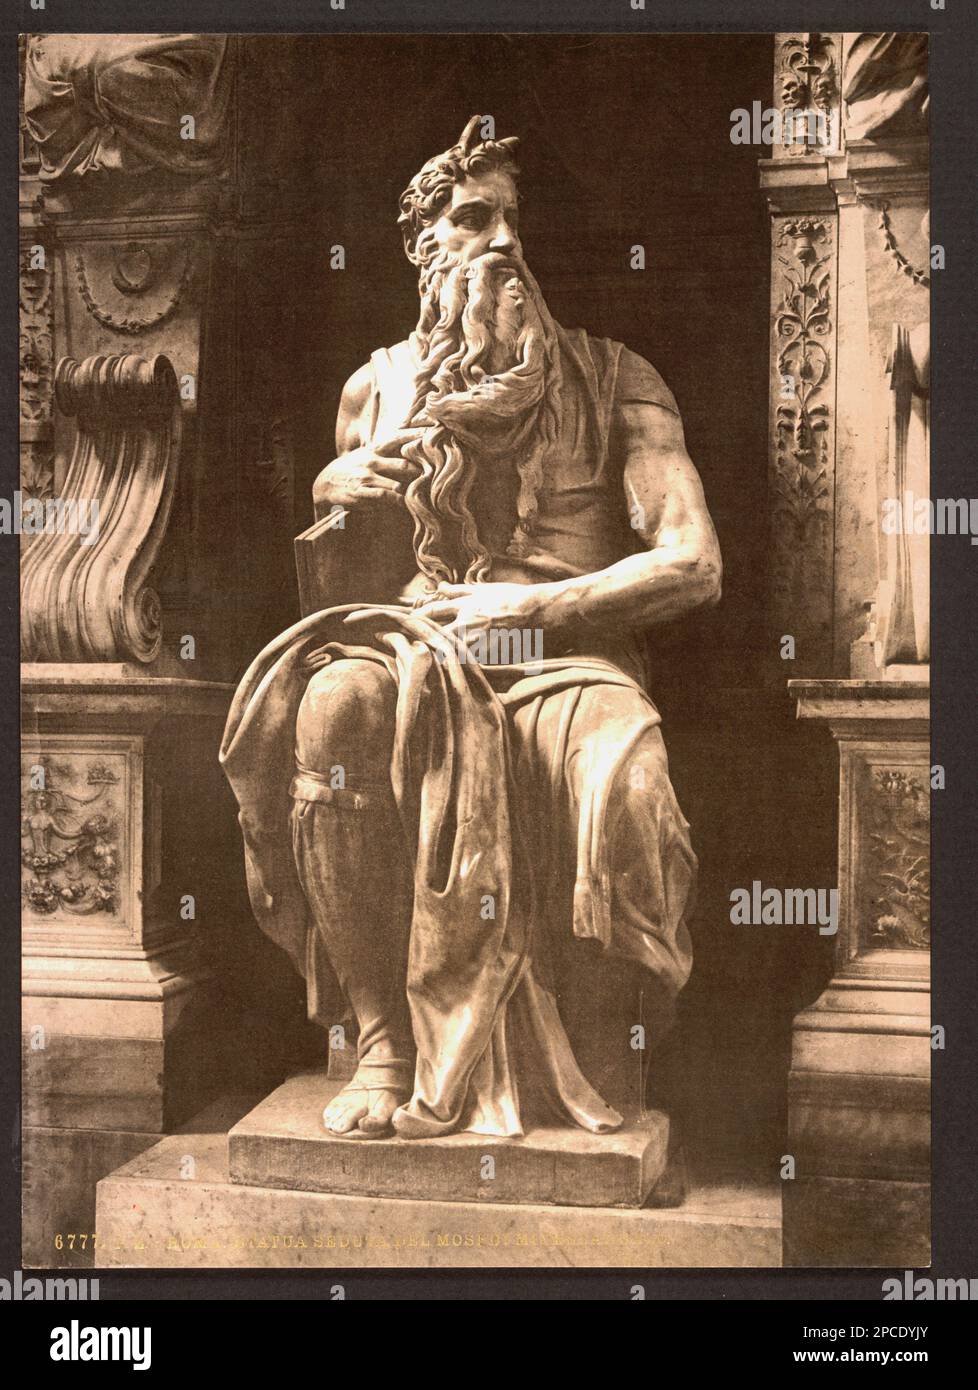 1895 ca , ROMA , ITALY : Photochrome with seated MOSES with the TEN COMMANDEMENTS tablets in Rome , by celebrated italian Renaissance sculptor MICHELANGELO BONARROTI  - RELIGIONE CATTOLICA EBRAICA - CATHOLIC RELIGION  EBRAIC - JEWISH - MOSHE' - MOYSES - ebraism - ebraismo - JEWISH - EBREO - EBREI - TAVOLE DEI DIECI COMANDAMENTI - patriarca - portrait - ritratto  - ARTS - ARTE - PORTRAIT - RITRATTO - MOSE' - Moshe - beard - barba - ARTE - ARTS - SCULTURA - SCULPTURE - Michel Angelo - Buonarroti - statua - statue - ITALIA - Mosé  ----  Archivio GBB Archivio Stock Photo